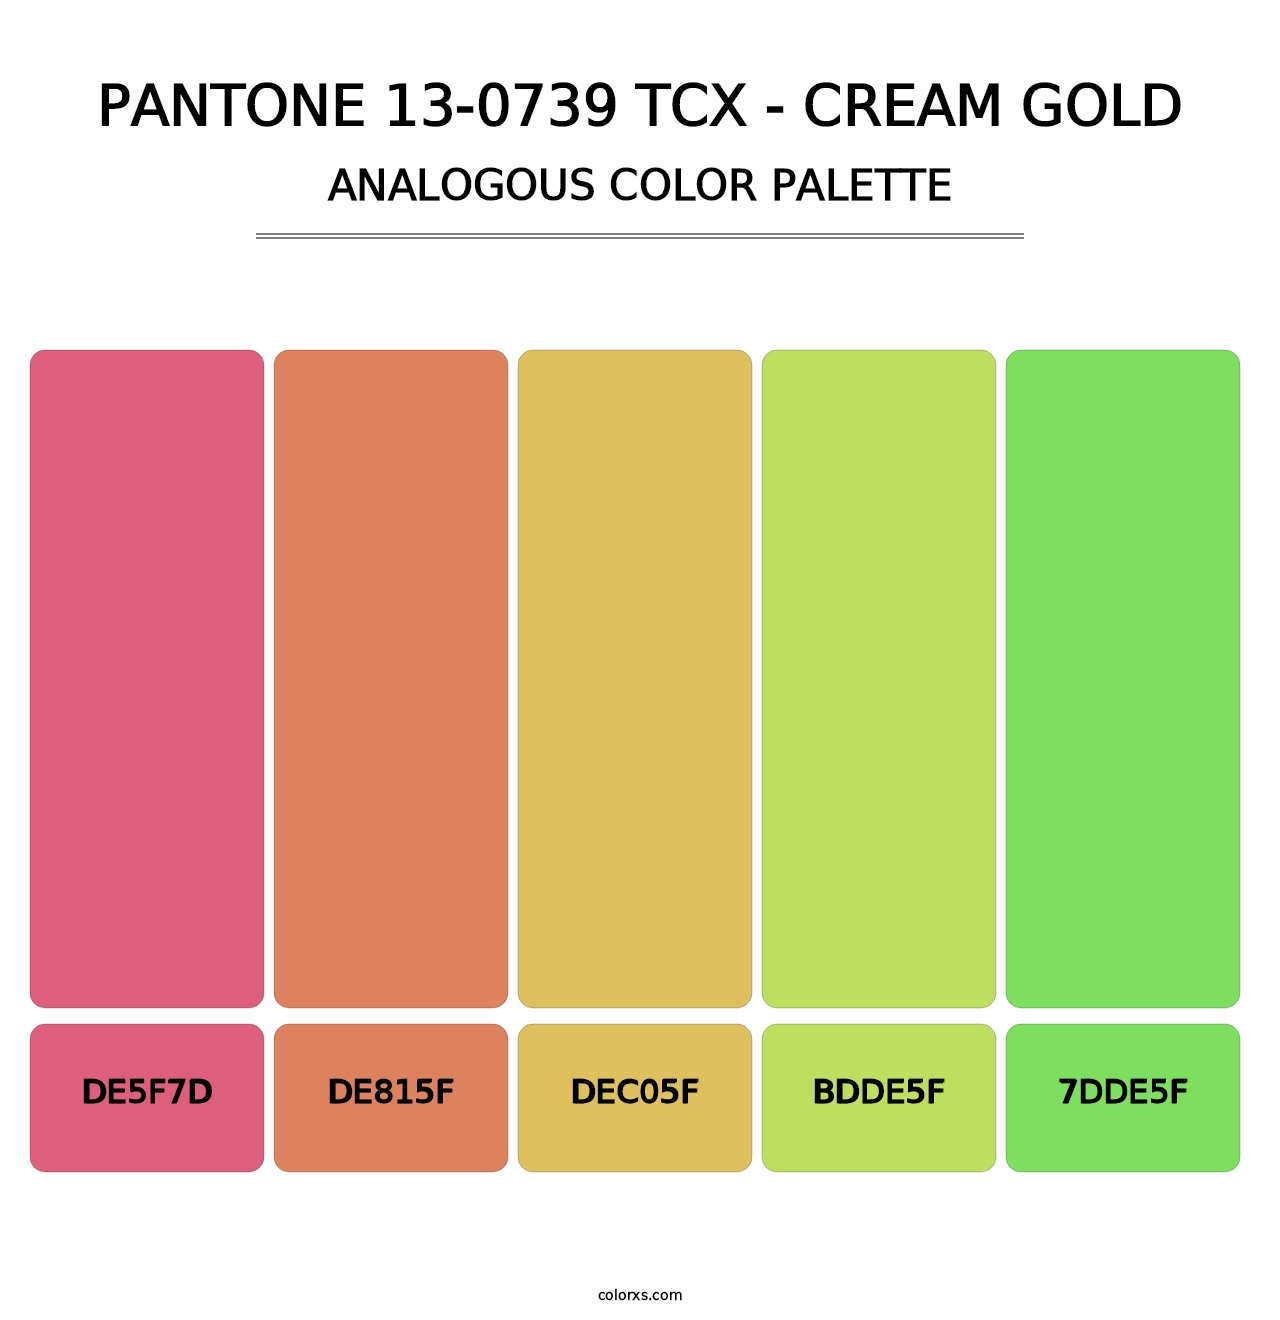 PANTONE 13-0739 TCX - Cream Gold - Analogous Color Palette